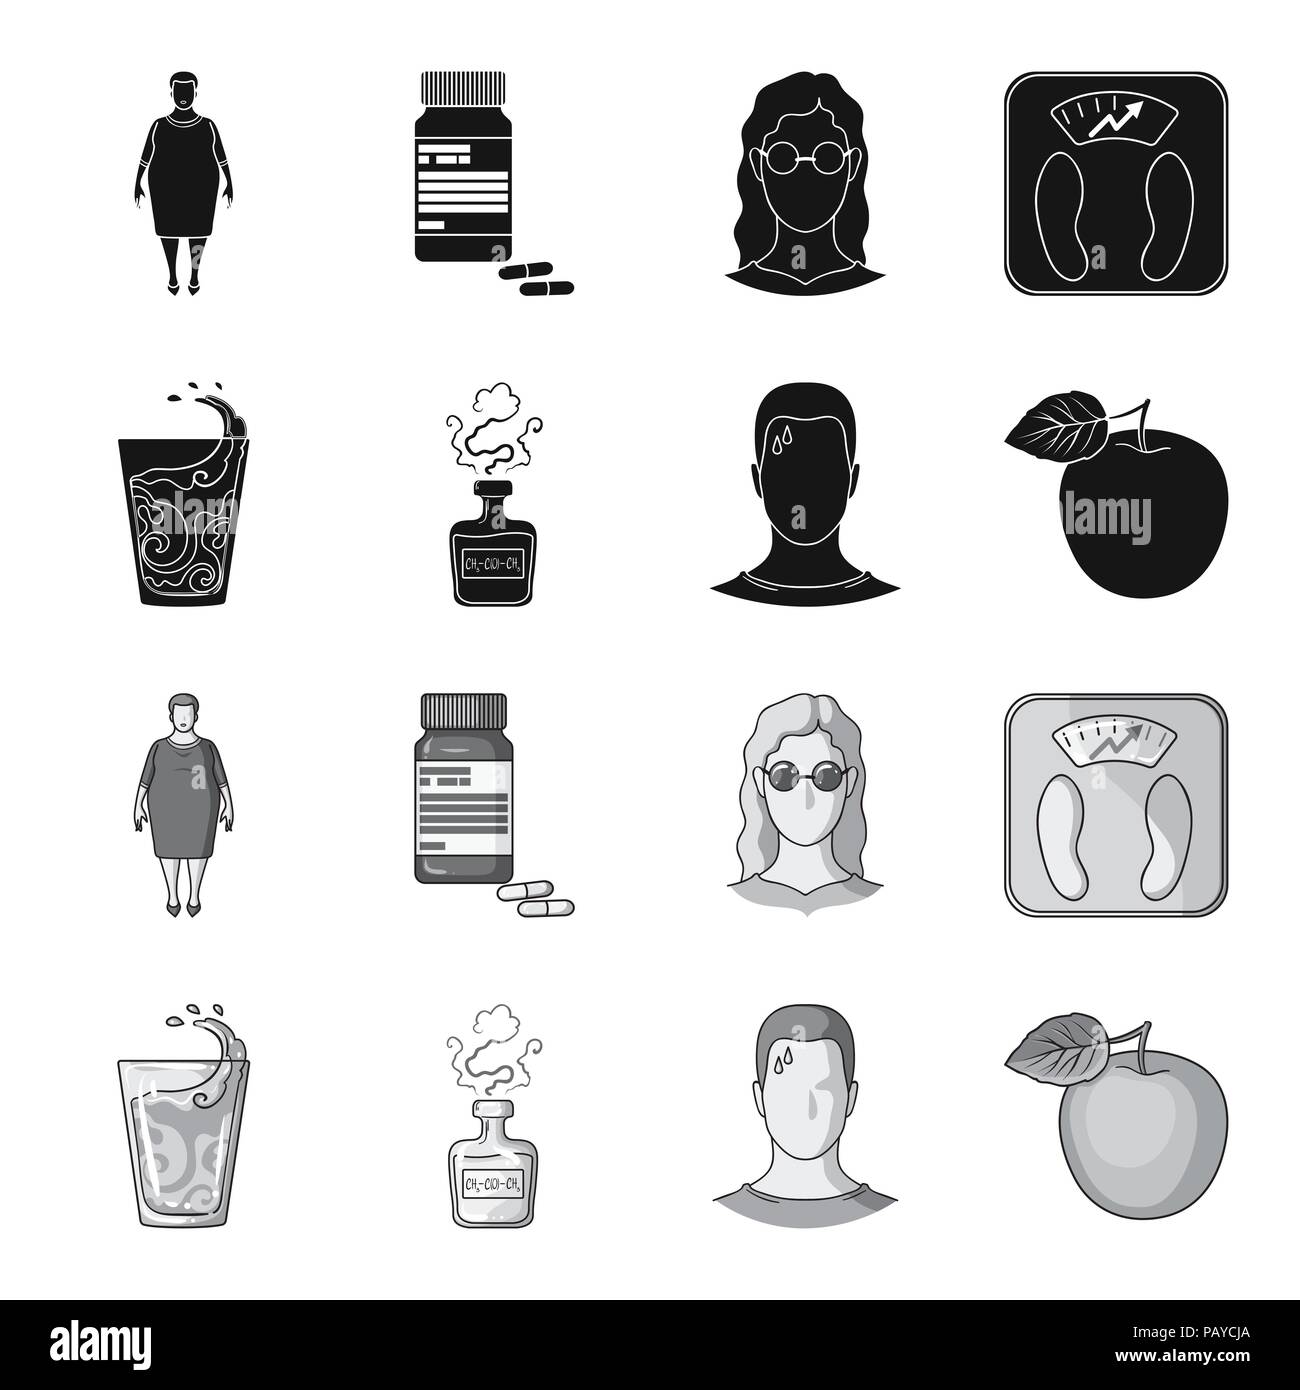 Ein Glas Wasser, eine Flasche Alkohol, ein Schwitzen Mann, ein Apple. Diabeth set Sammlung Icons in Schwarz, Schwarz-Weiß Stil vektor Symbol lieferbar illustrati Stock Vektor